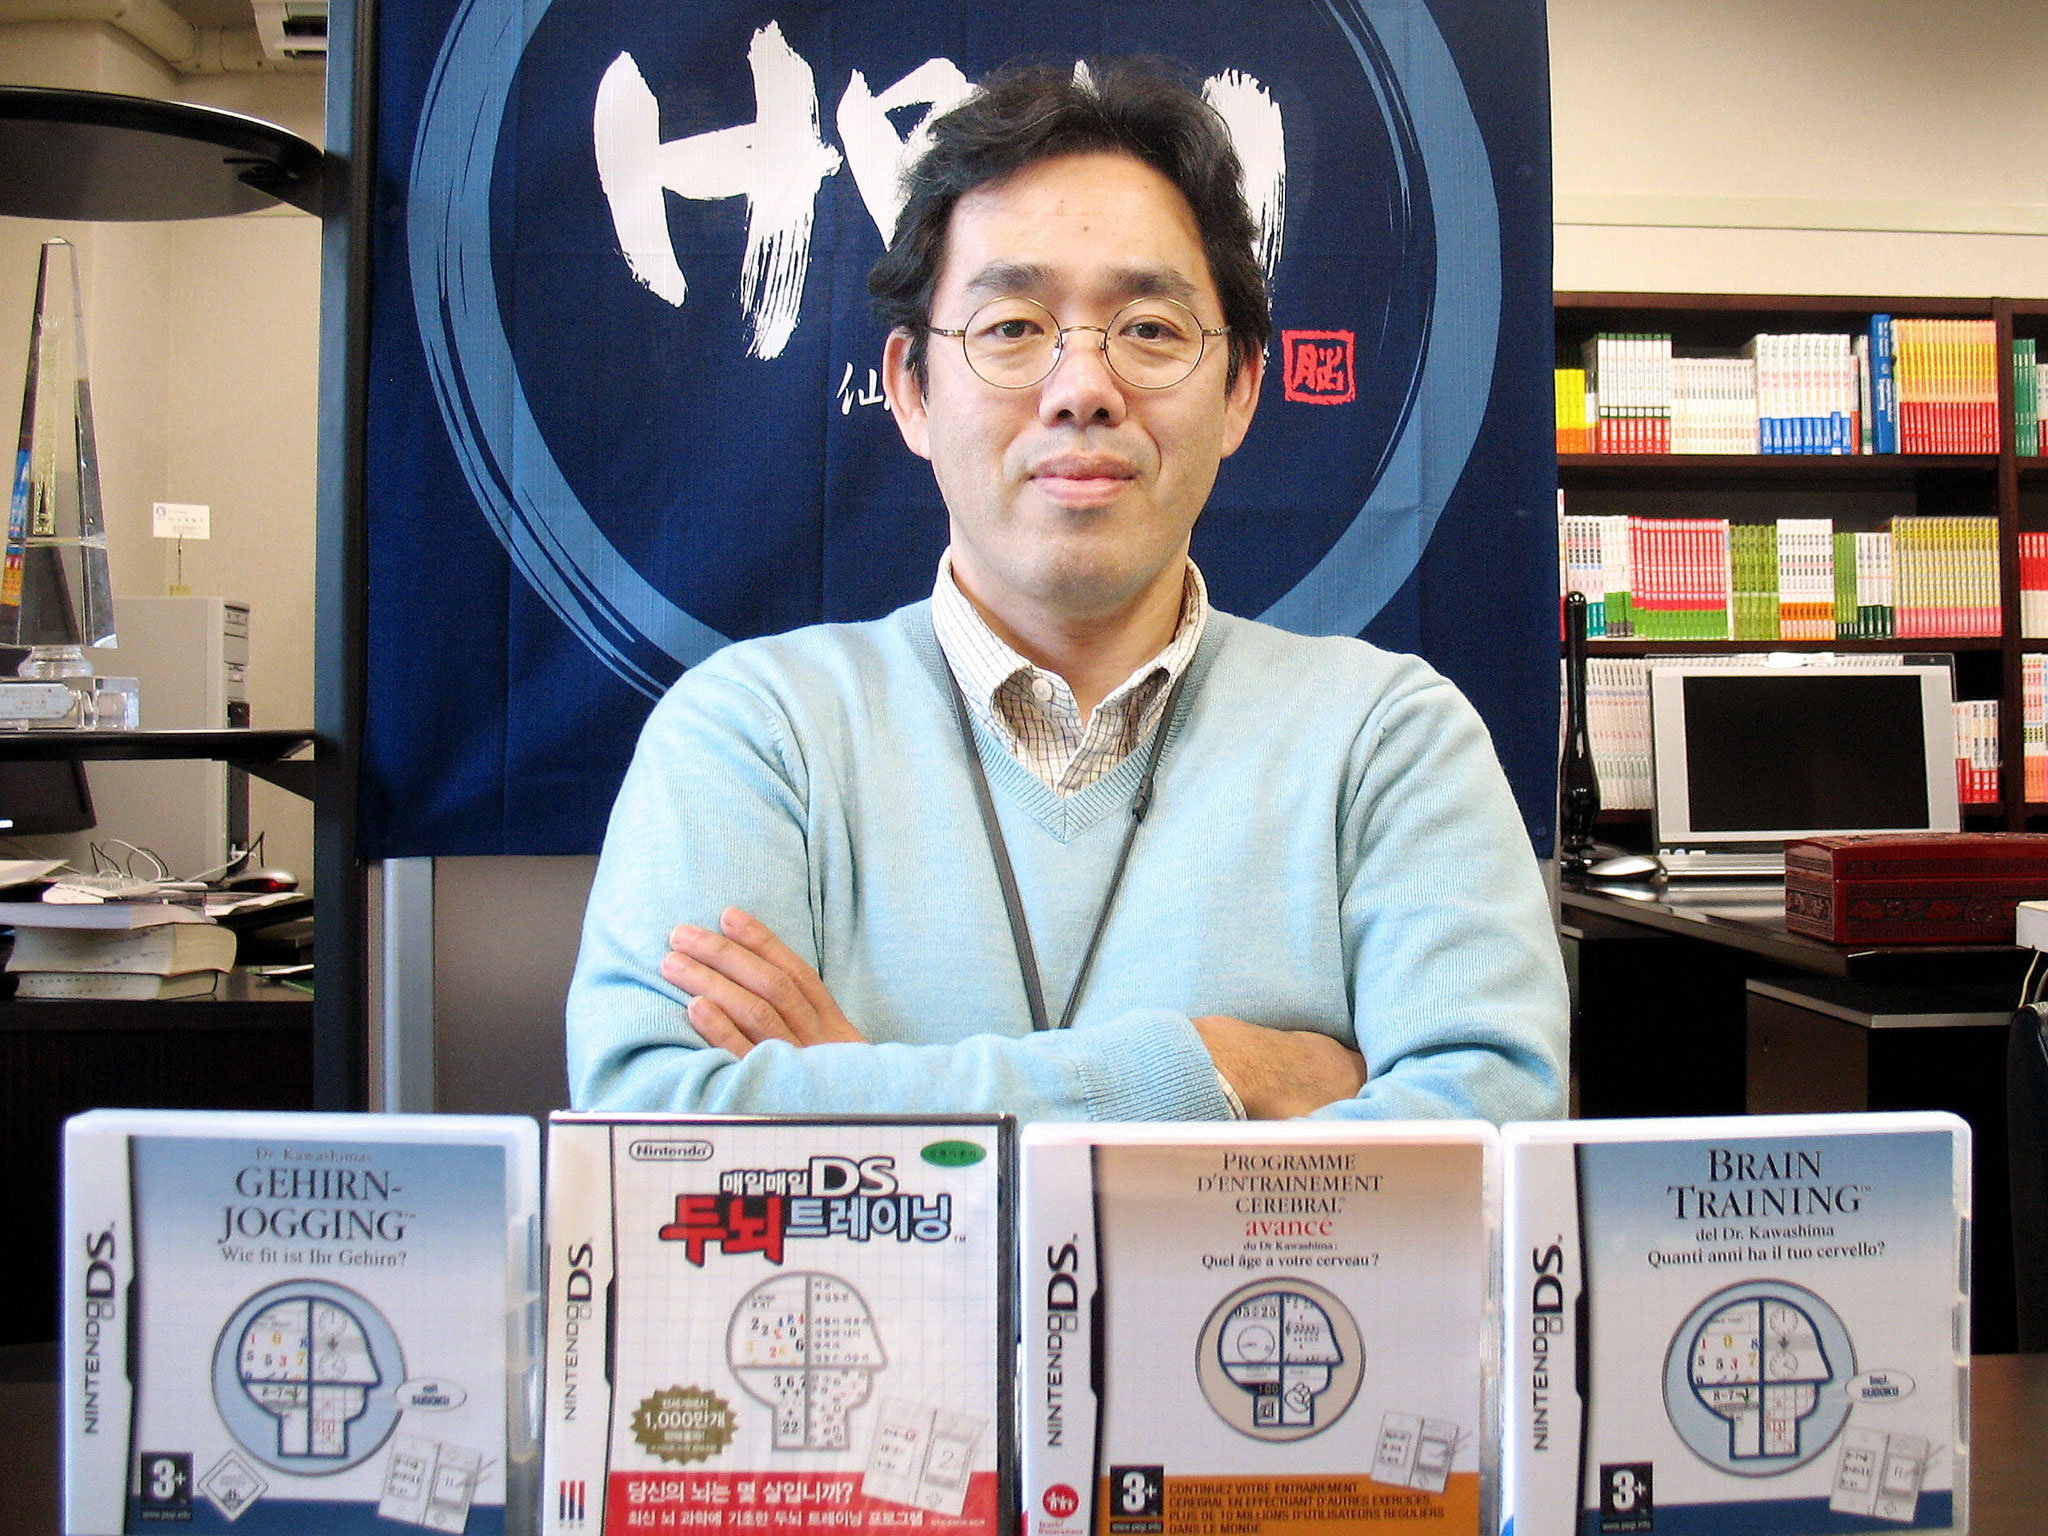 دانلود نرم افزار ورزش مغز دکتر کاواشیما 